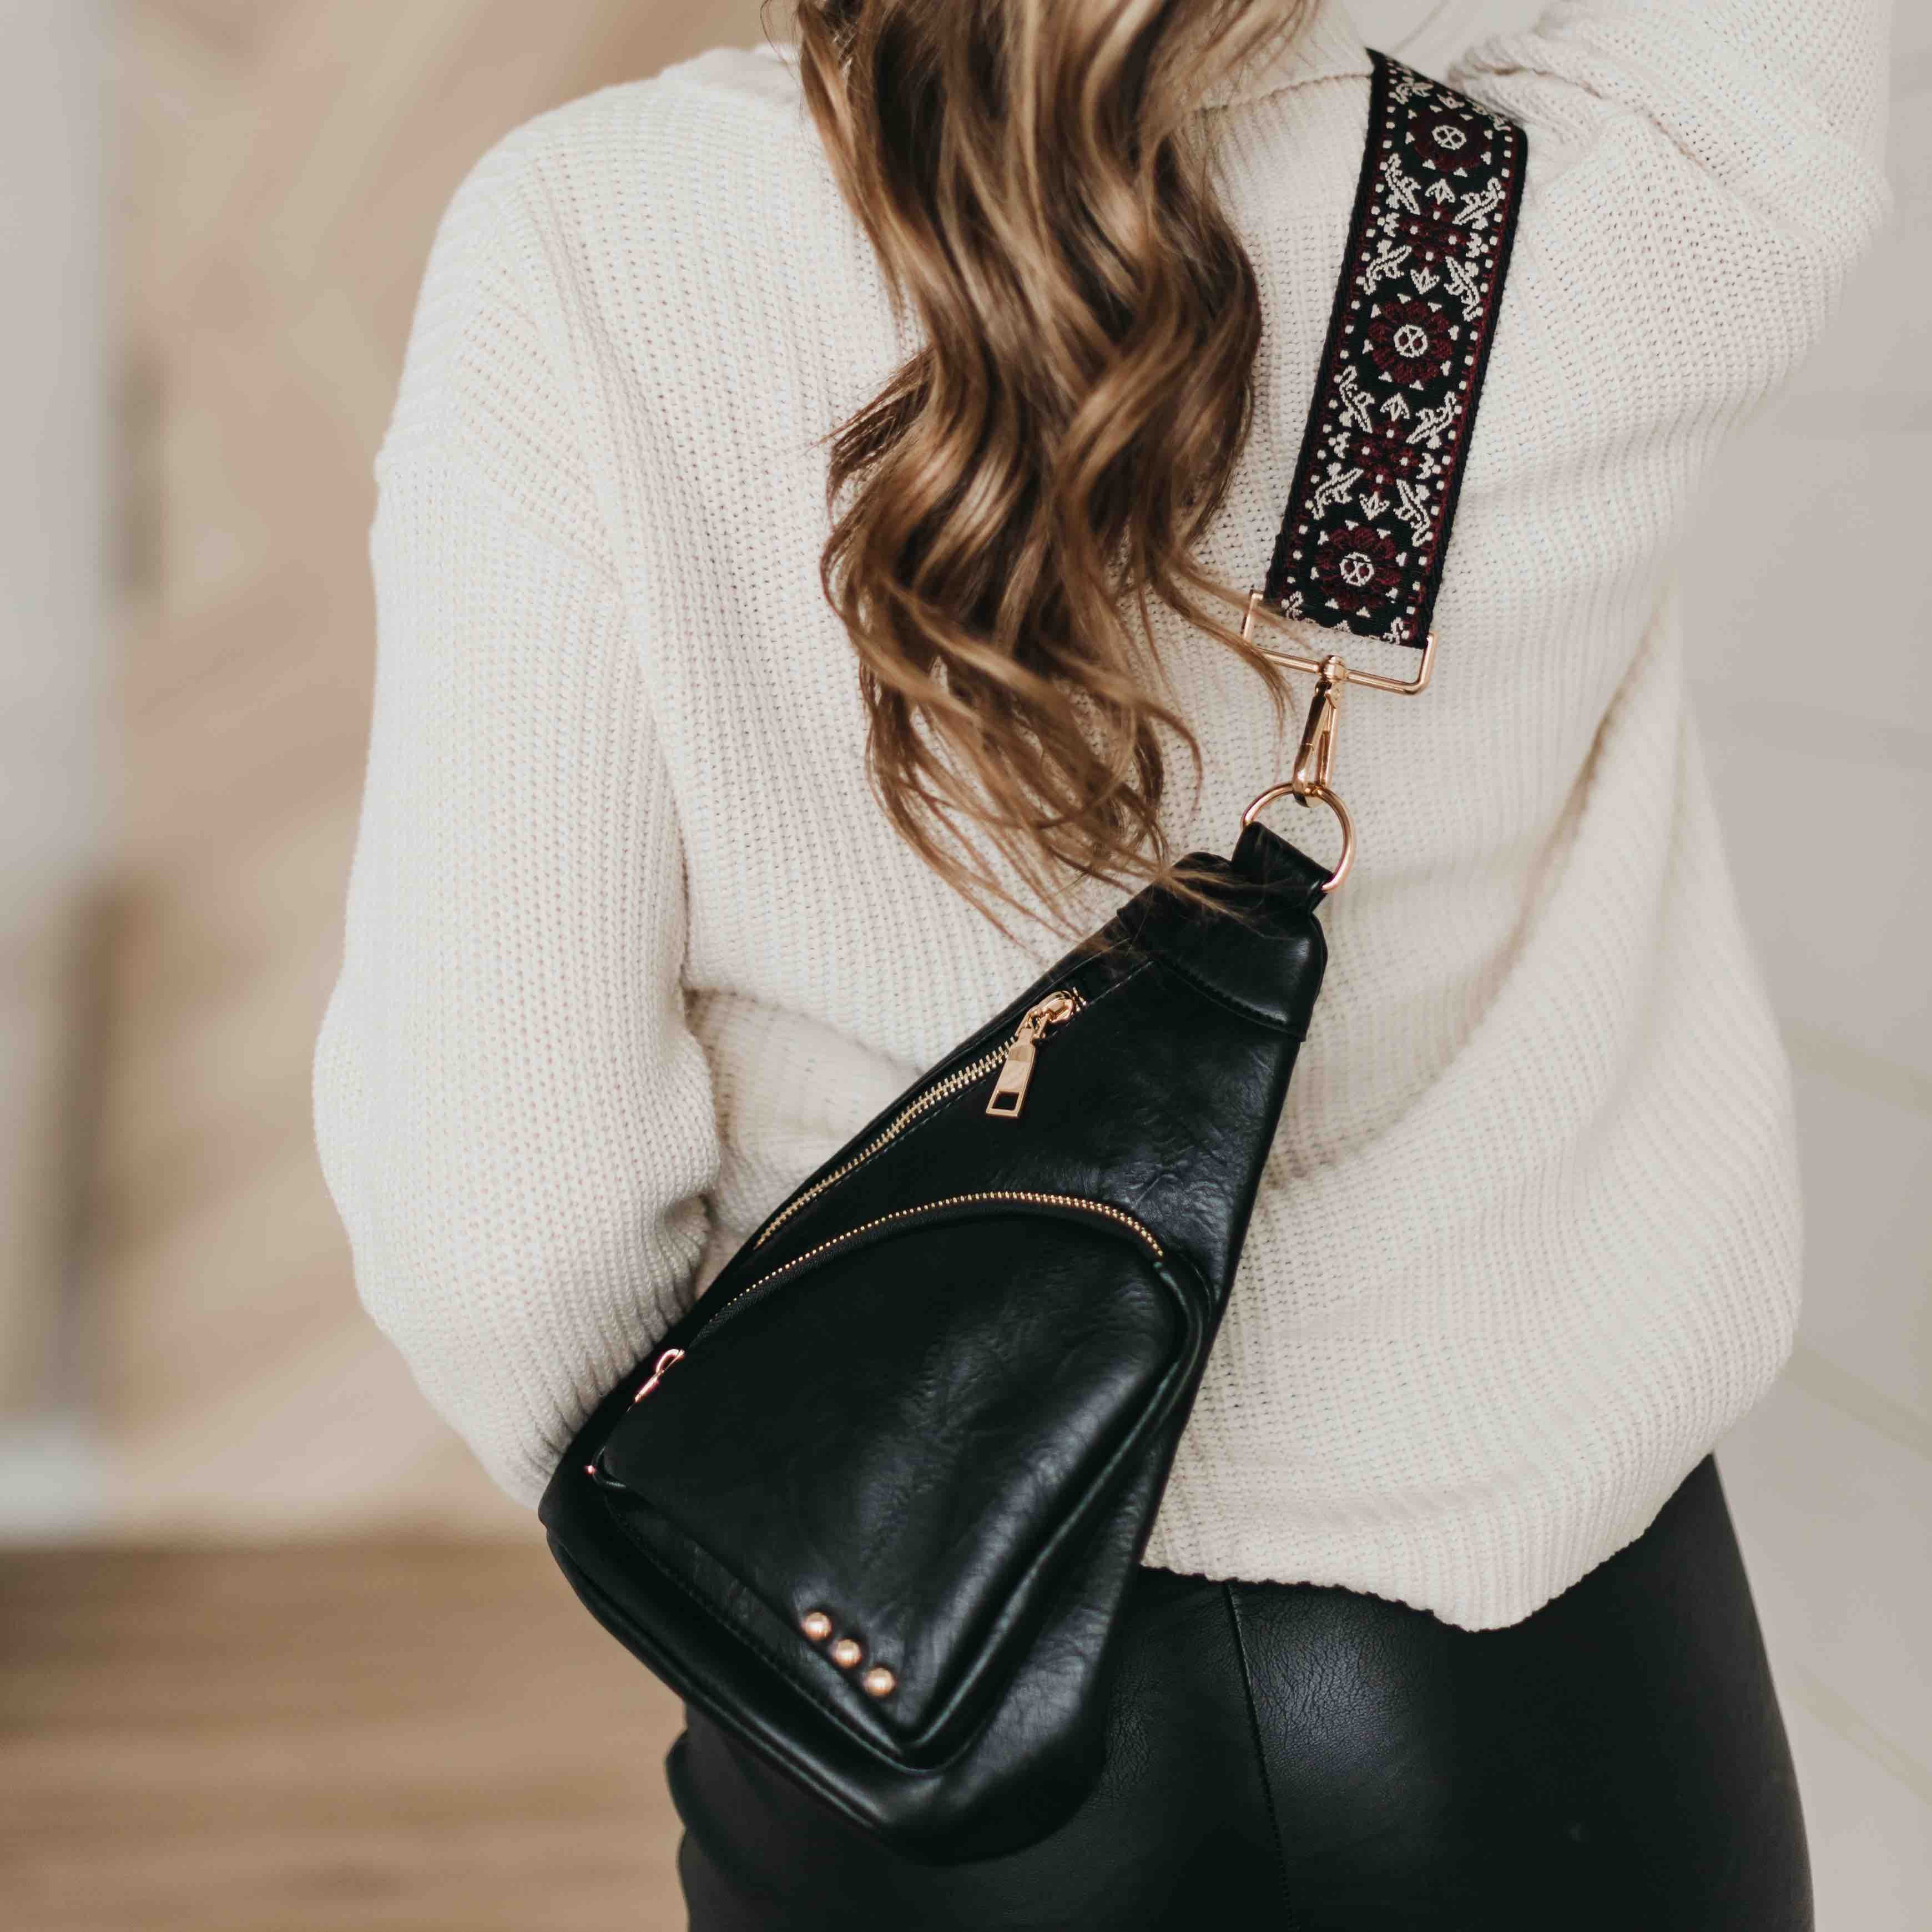 Gray Colour Leather Handbag Womens Shoulder Bag Side Bag - Etsy | Leather  handbags, Side bags, Leather weekender bag